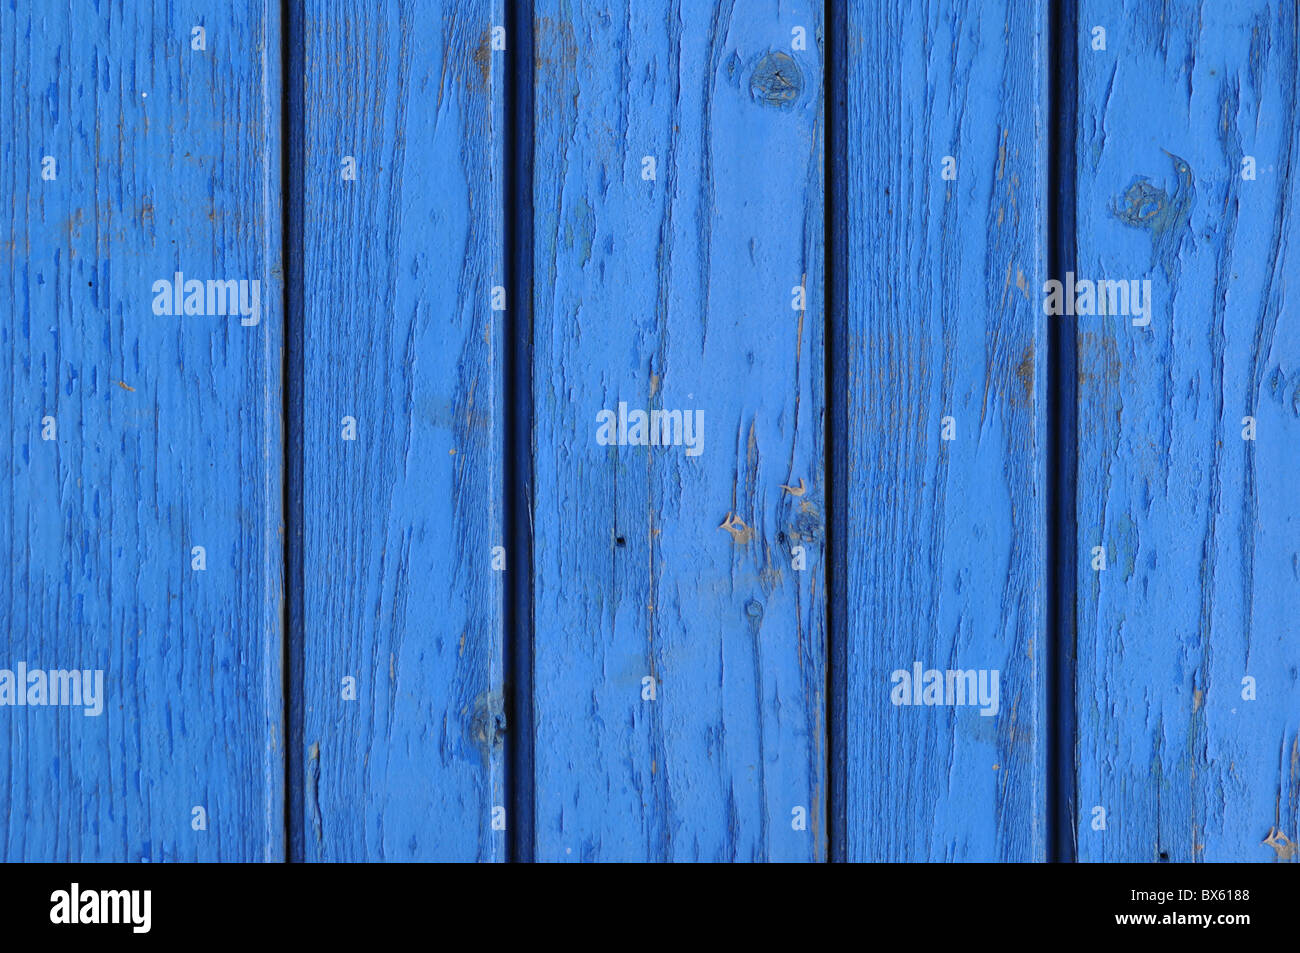 La texture en bois bleu Banque D'Images